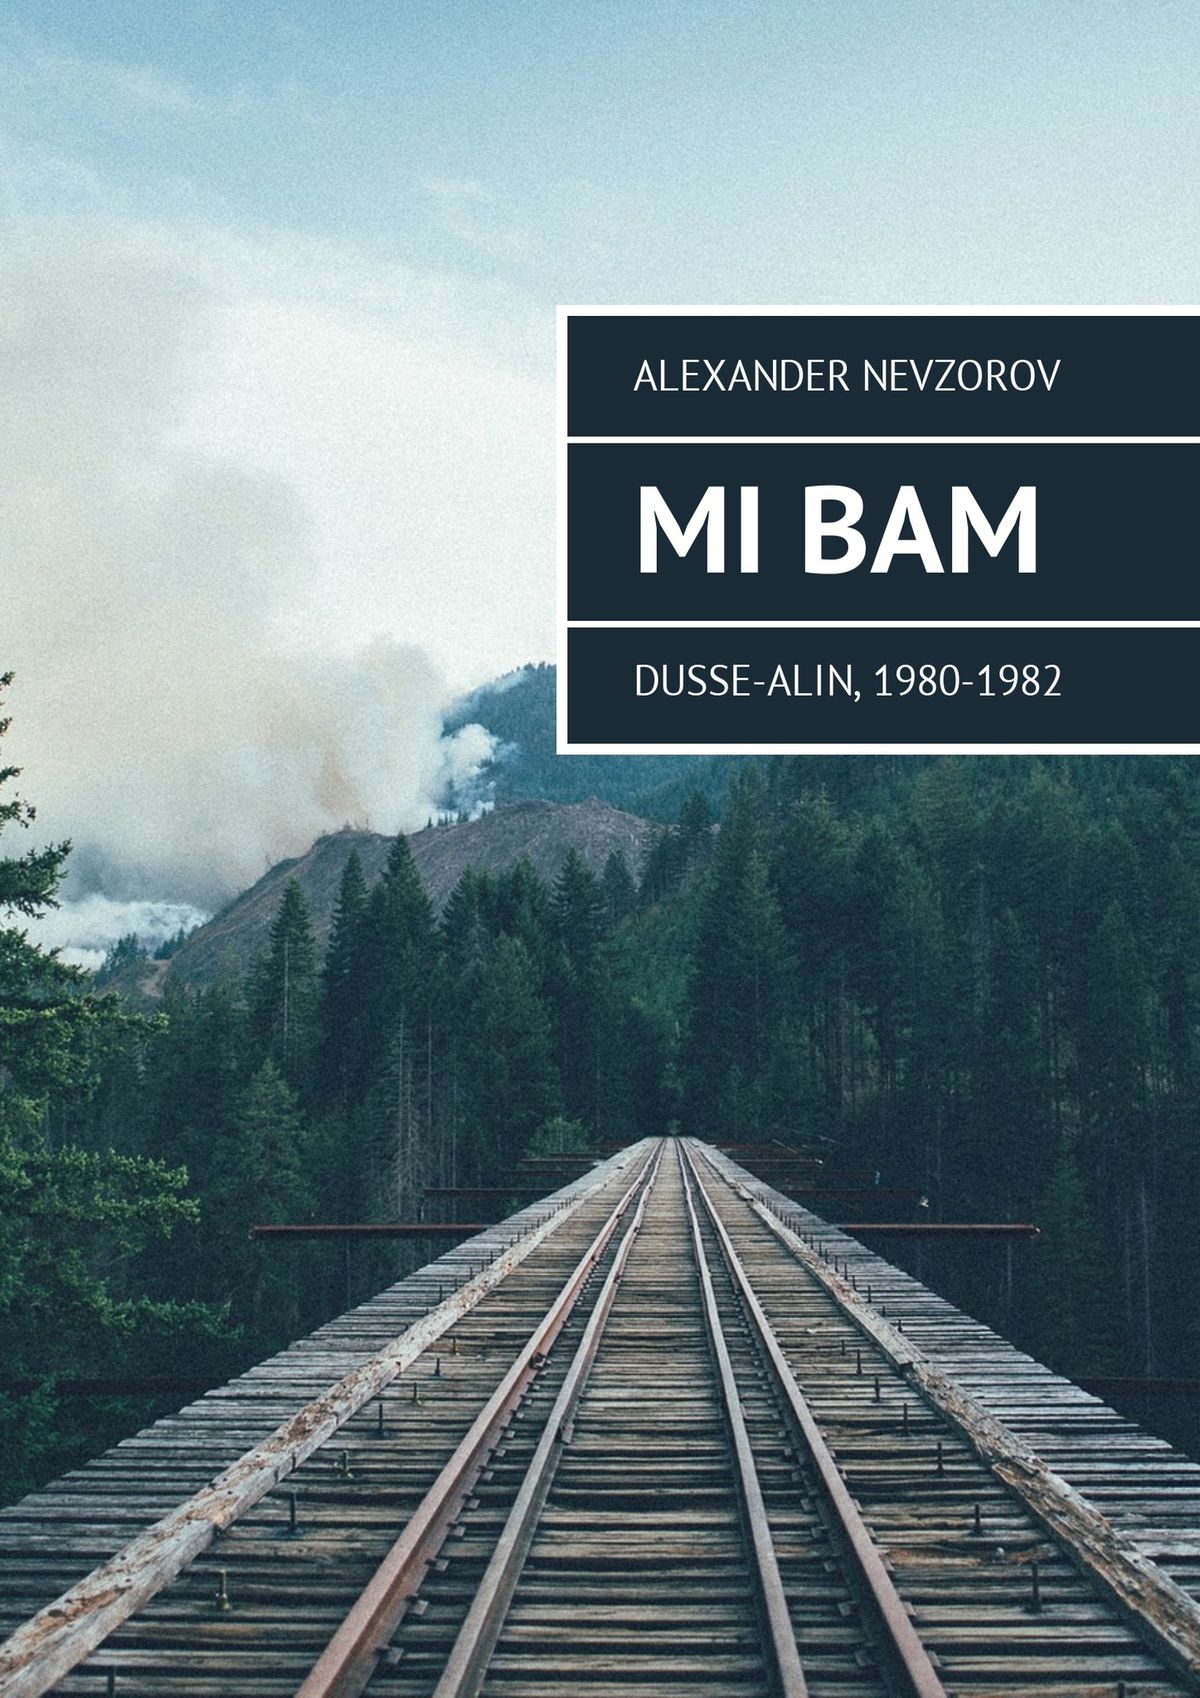 Книга Mi BAM Dusse-Alin, 1980-1982 из серии , созданная Alexander Nevzorov, может относится к жанру Биографии и Мемуары. Стоимость электронной книги Mi BAM Dusse-Alin, 1980-1982 с идентификатором 36621035 составляет 96.00 руб.